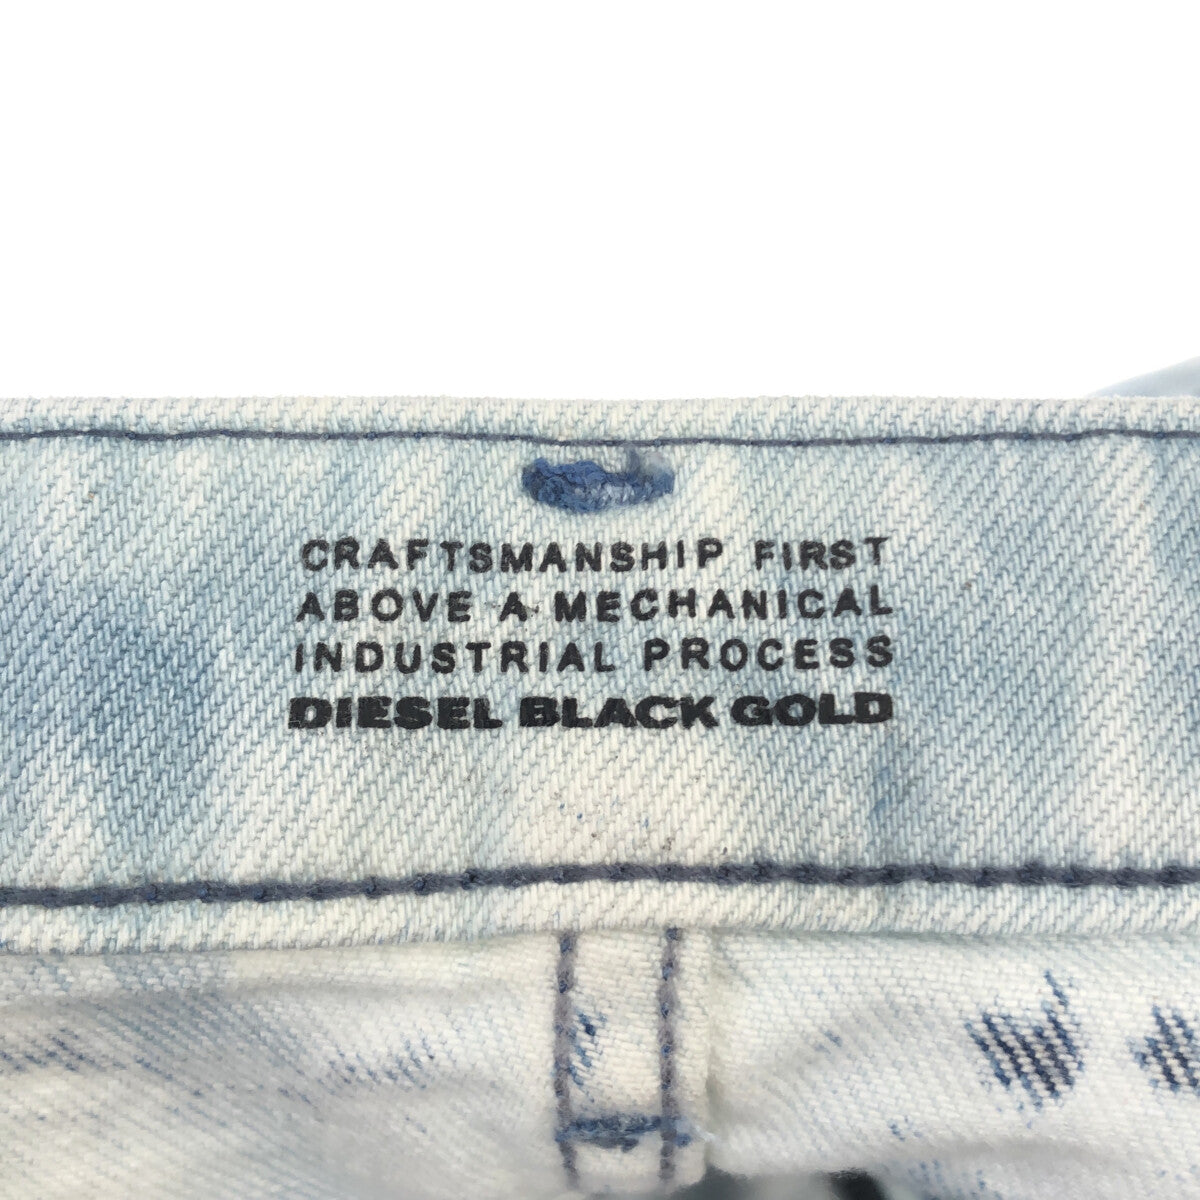 DIESEL BLACK GOLD / ディーゼルブラックゴールド | ブリーチ加工 デニムパンツ | 26 | レディース